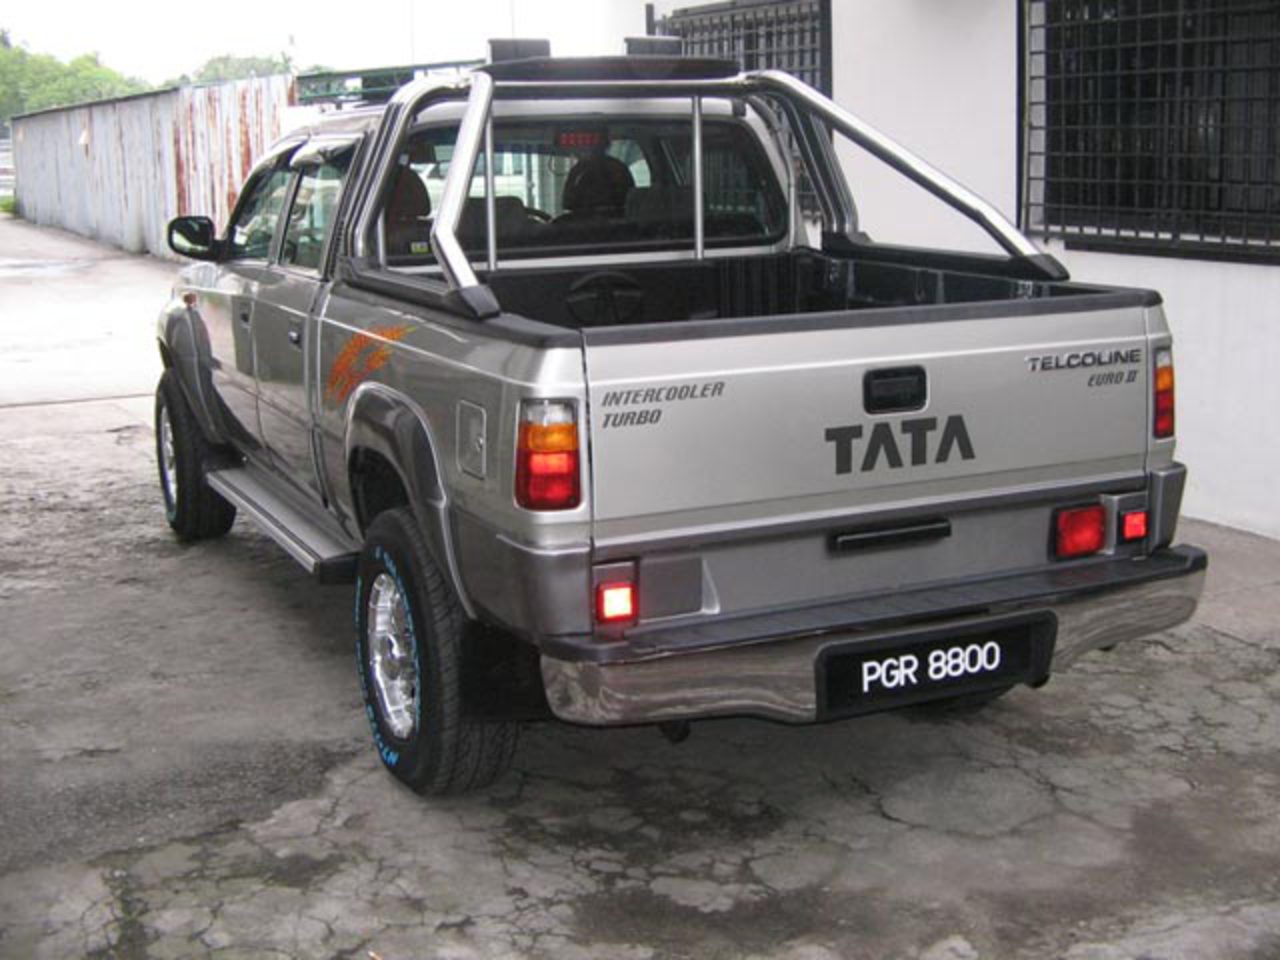 Tata 207: Galerie de photos, informations complètes sur le modèle...